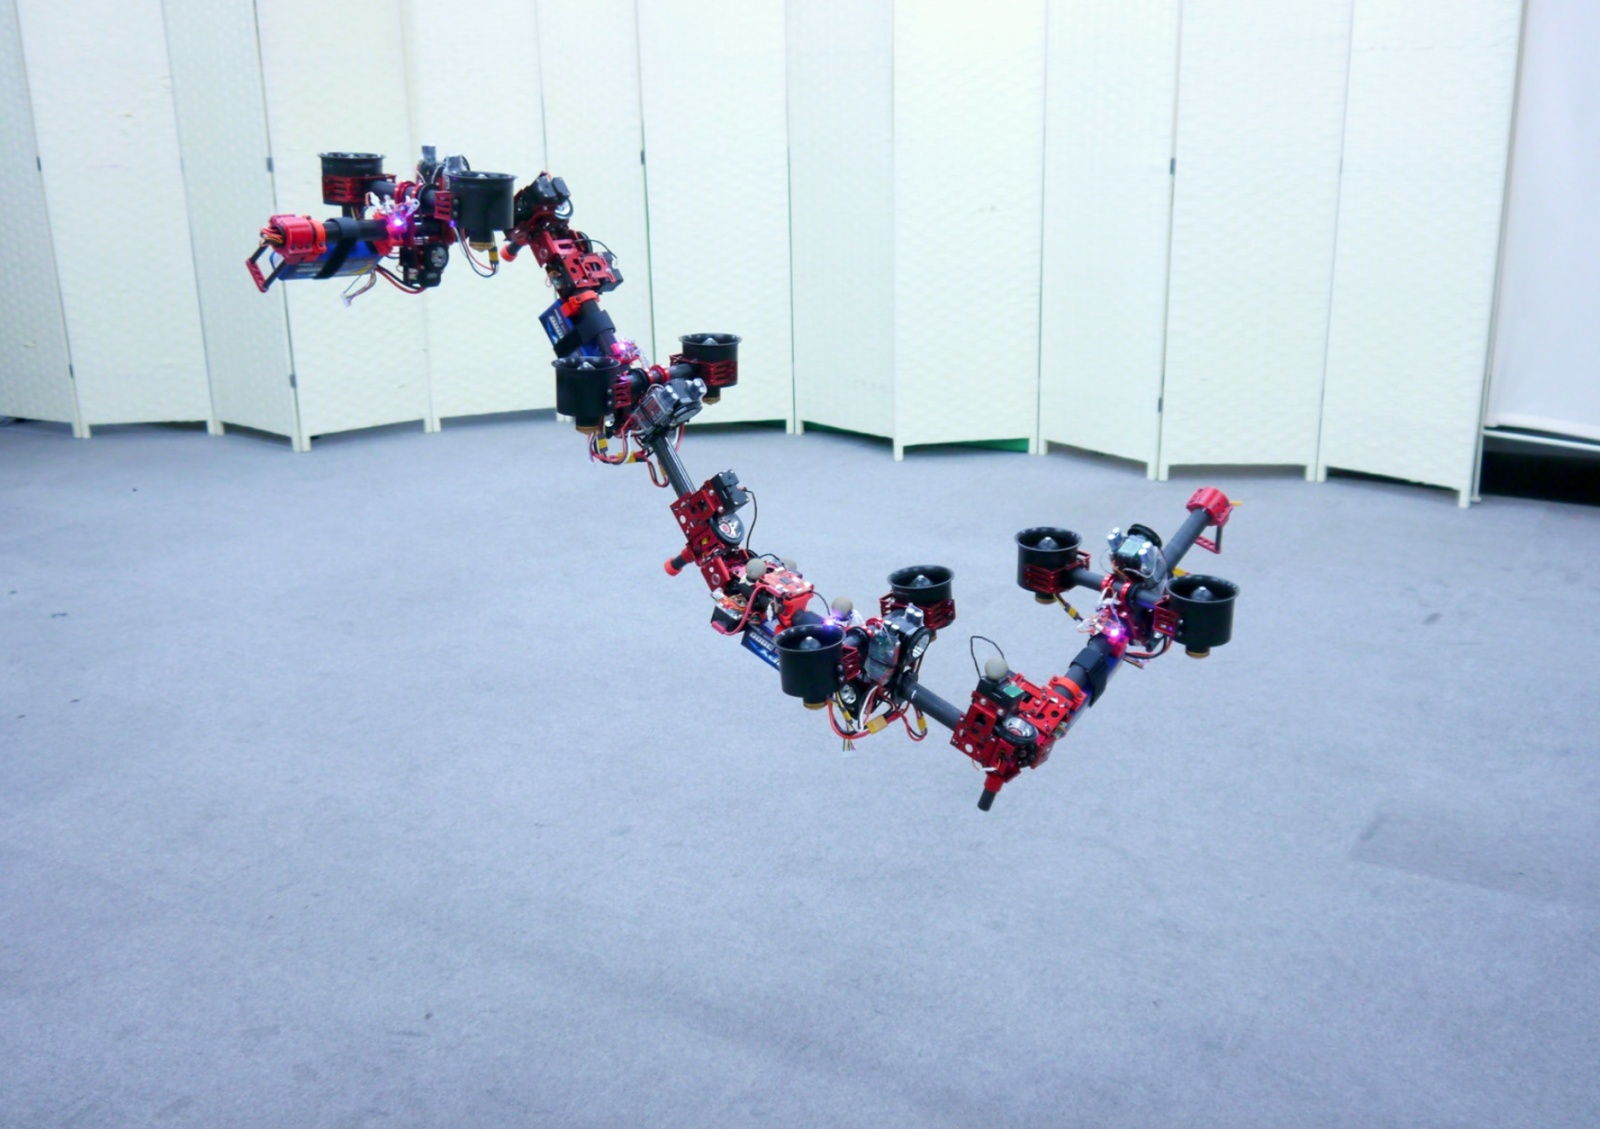 Летающий робот меняет форму в воздухе - 1